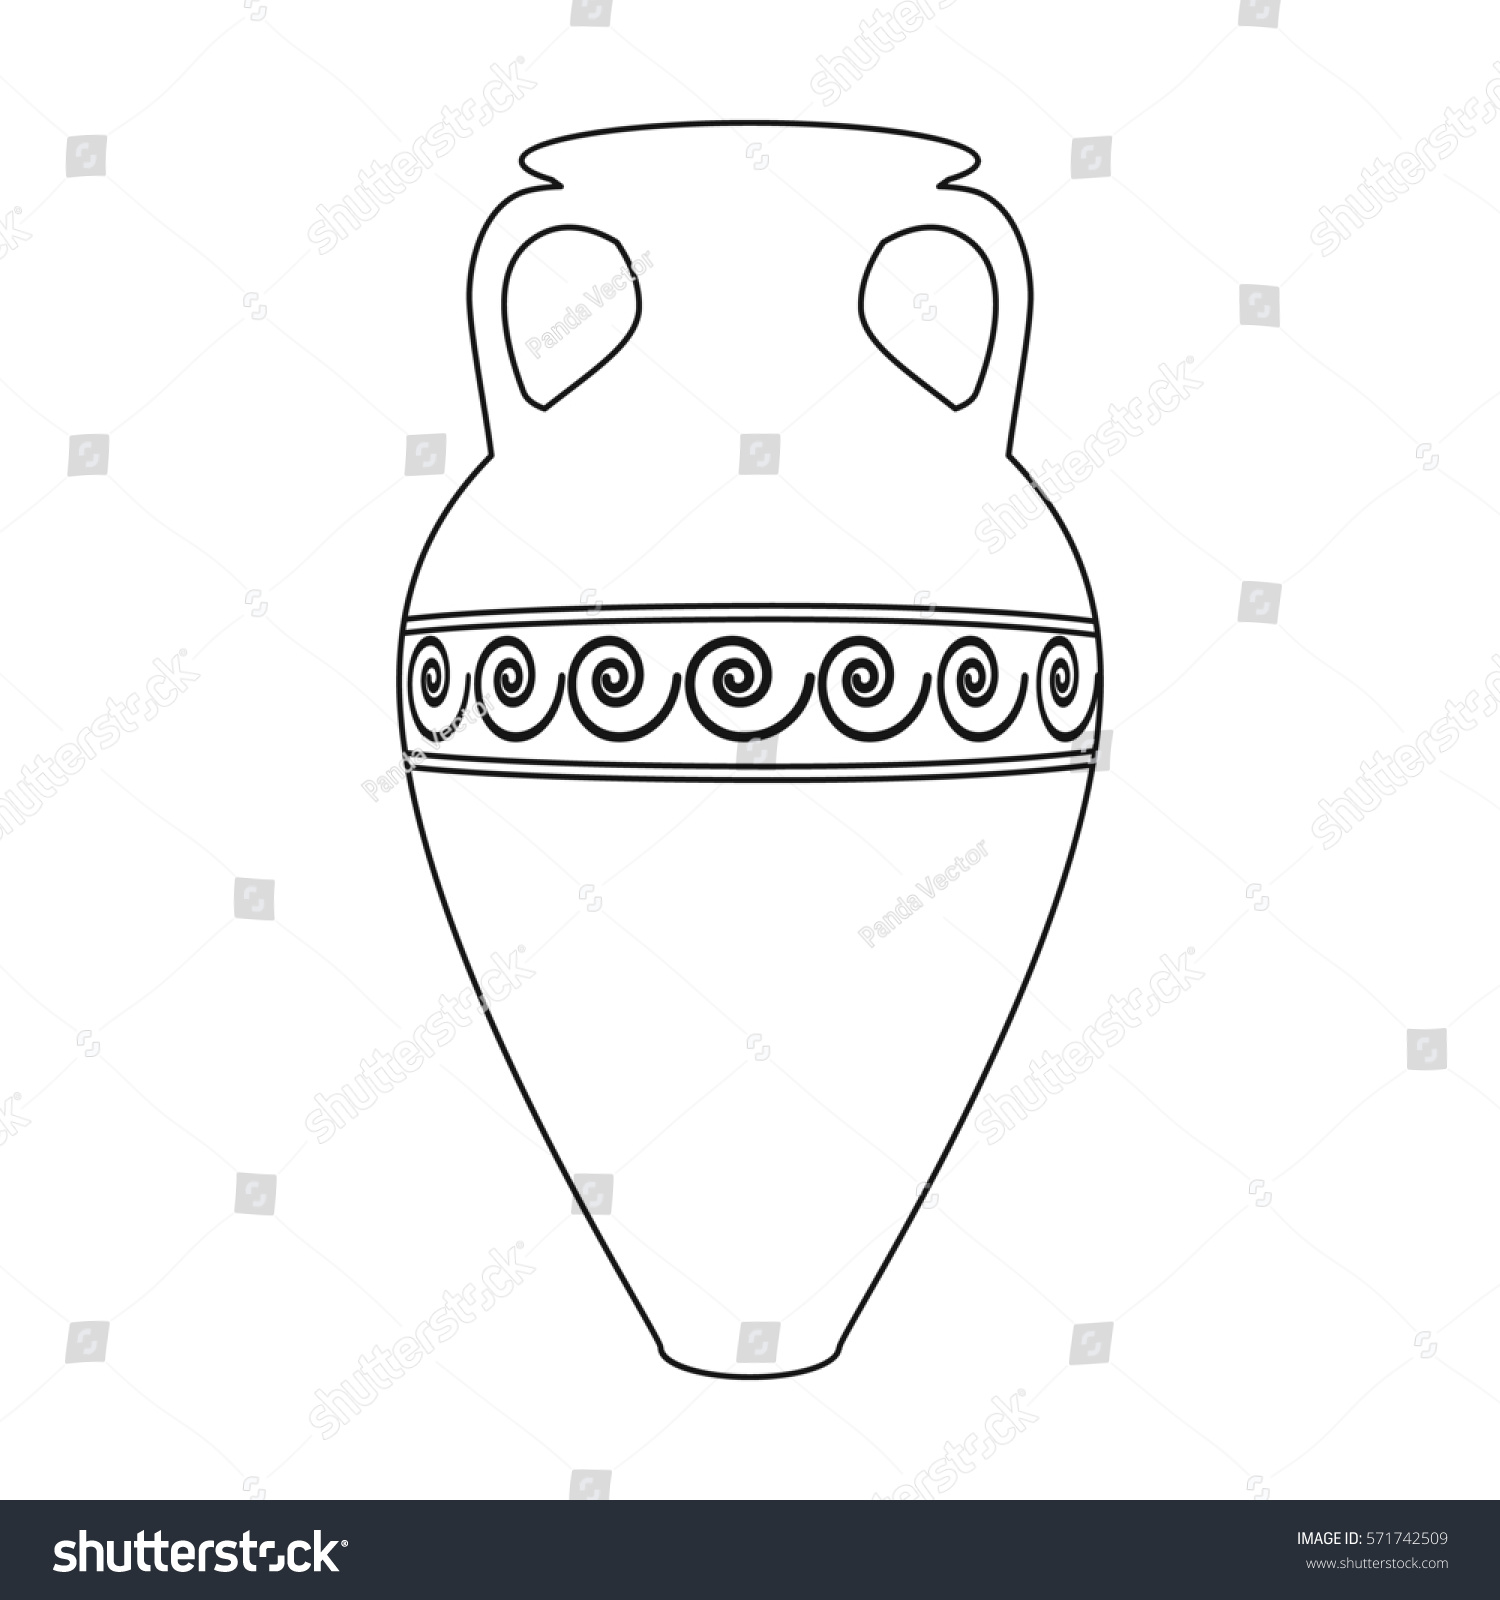 Трафарет греческой вазы для рисования